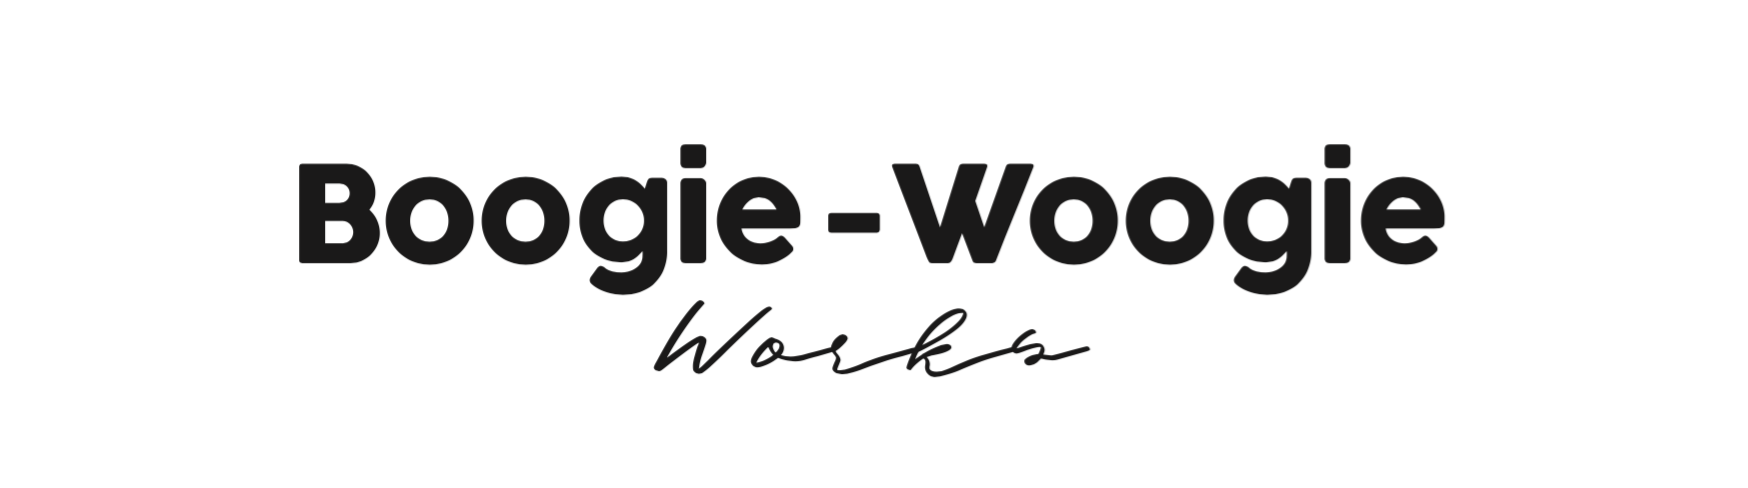 Boogie Woogie Works